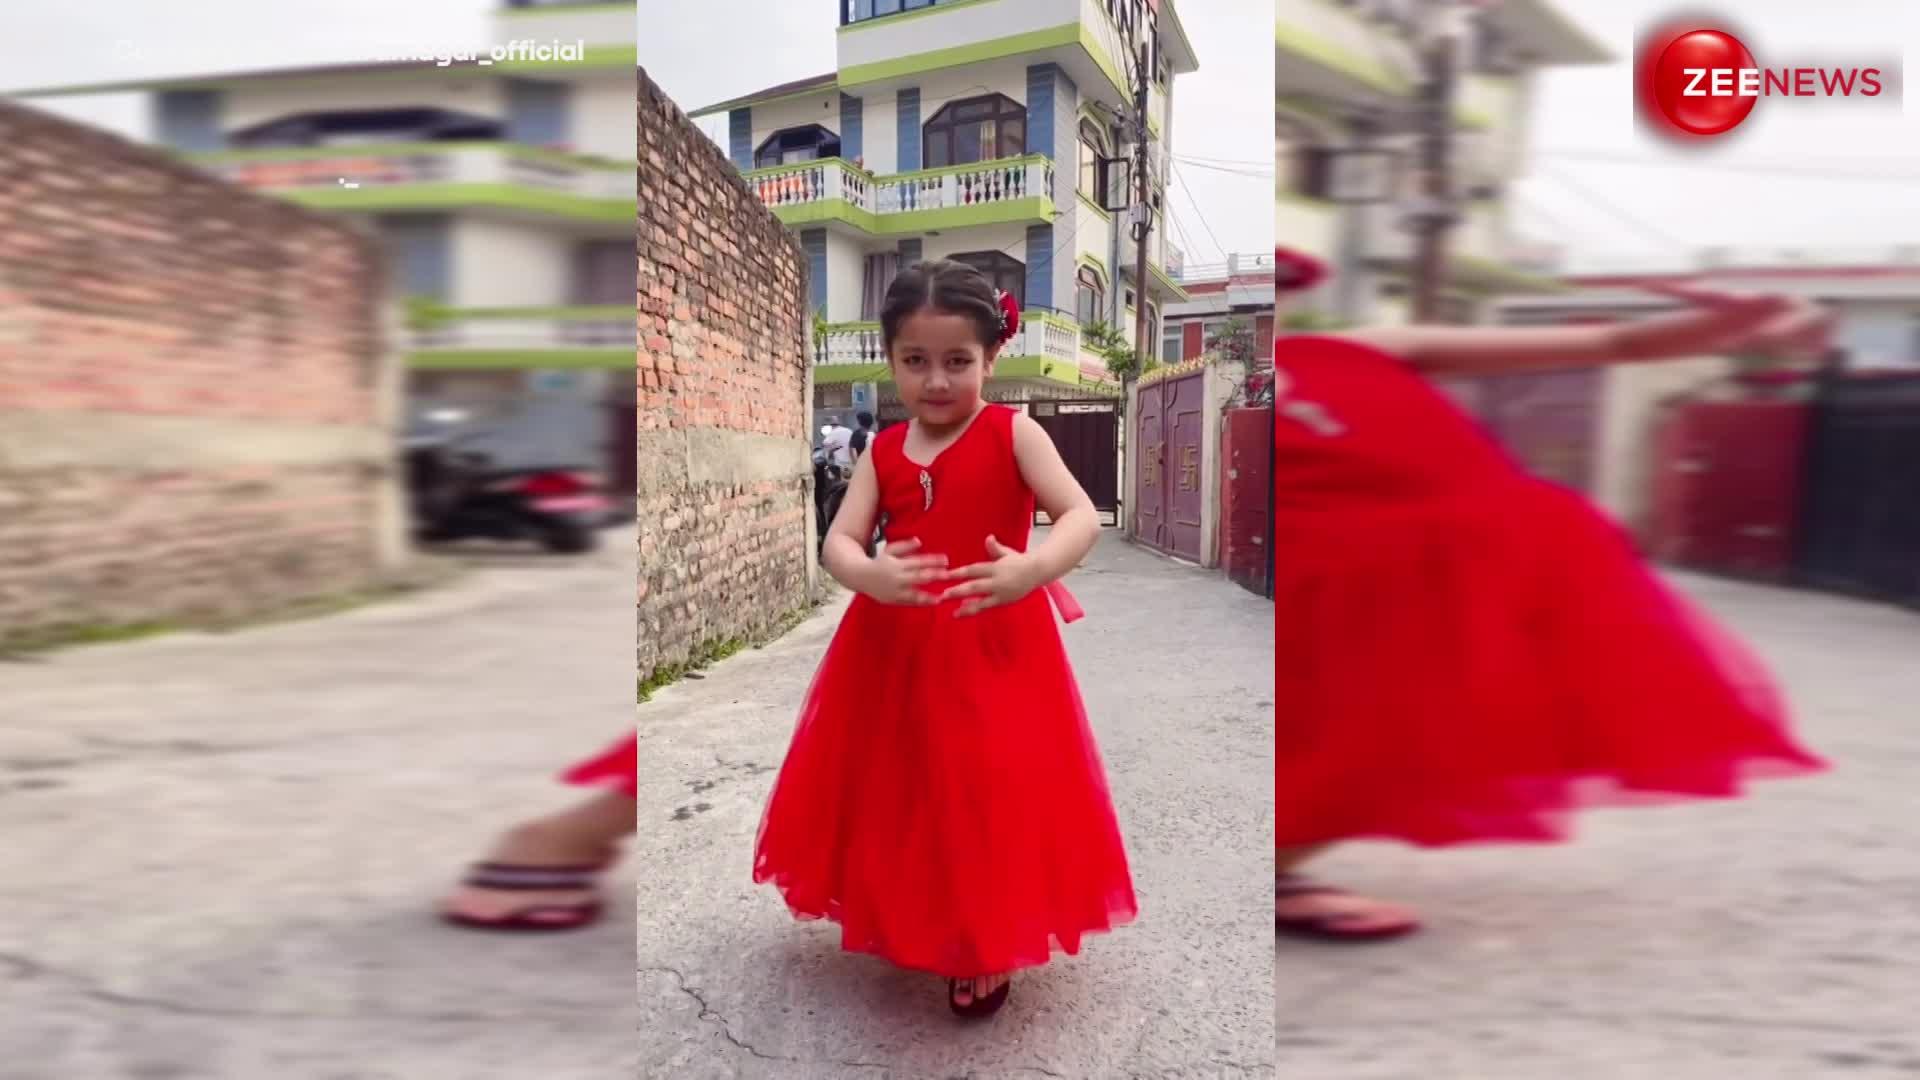 deepika padukone के गाने 'Dhoom Taana'पर 4 साल की बच्ची ने किया जबरदस्त डांस, video देख फैन हो गई पब्लिक